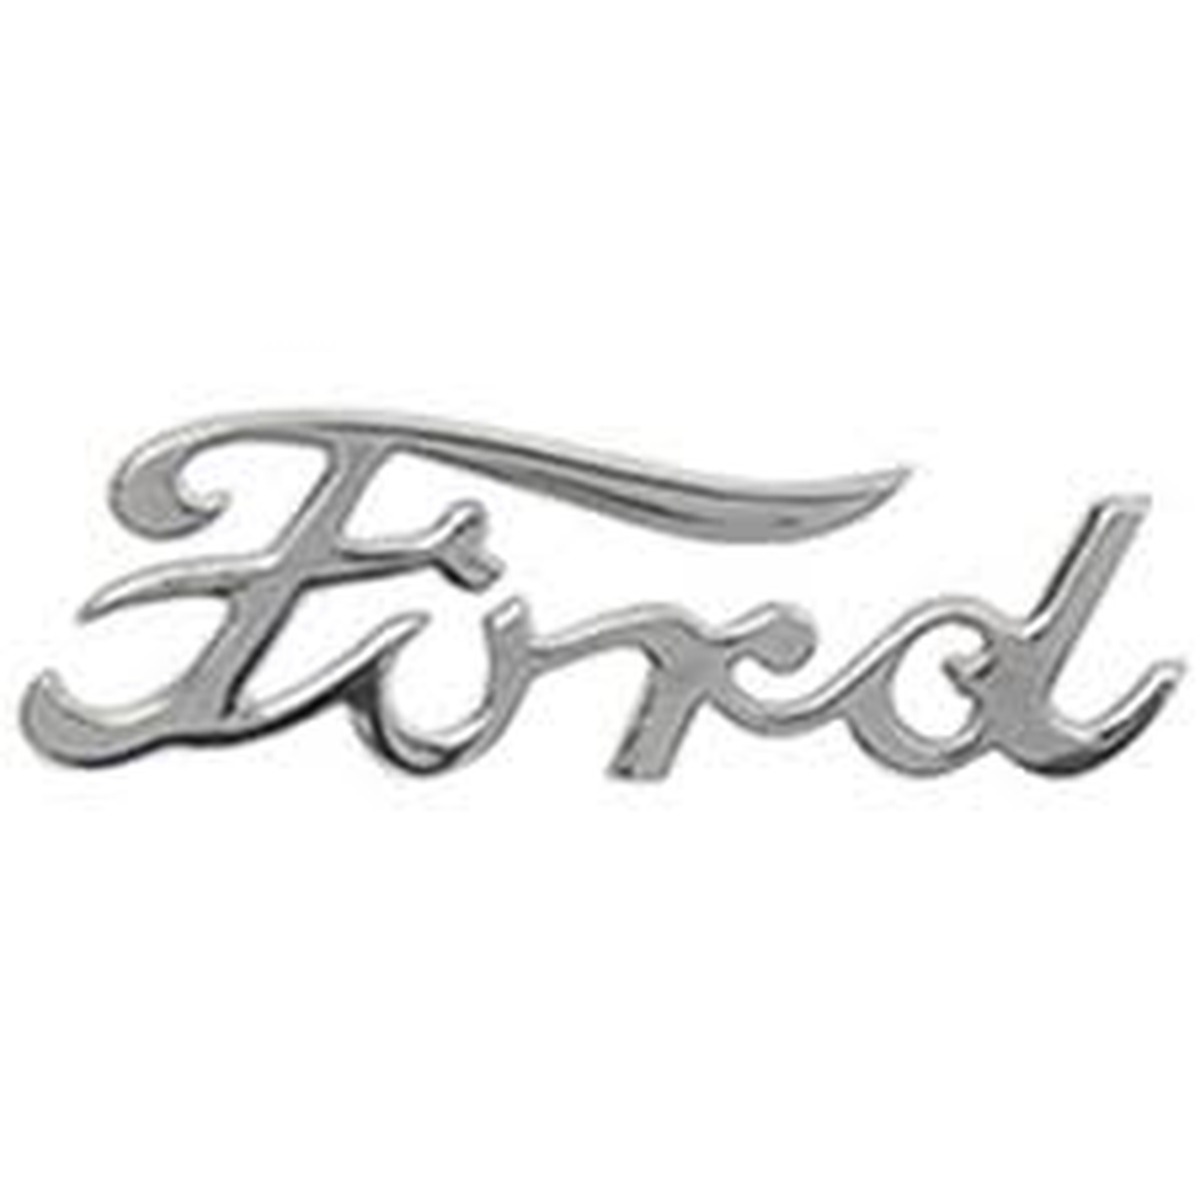 Bonnet/Hood Emblems - Ford Script incl boot lid - 1939 Deluxe pas